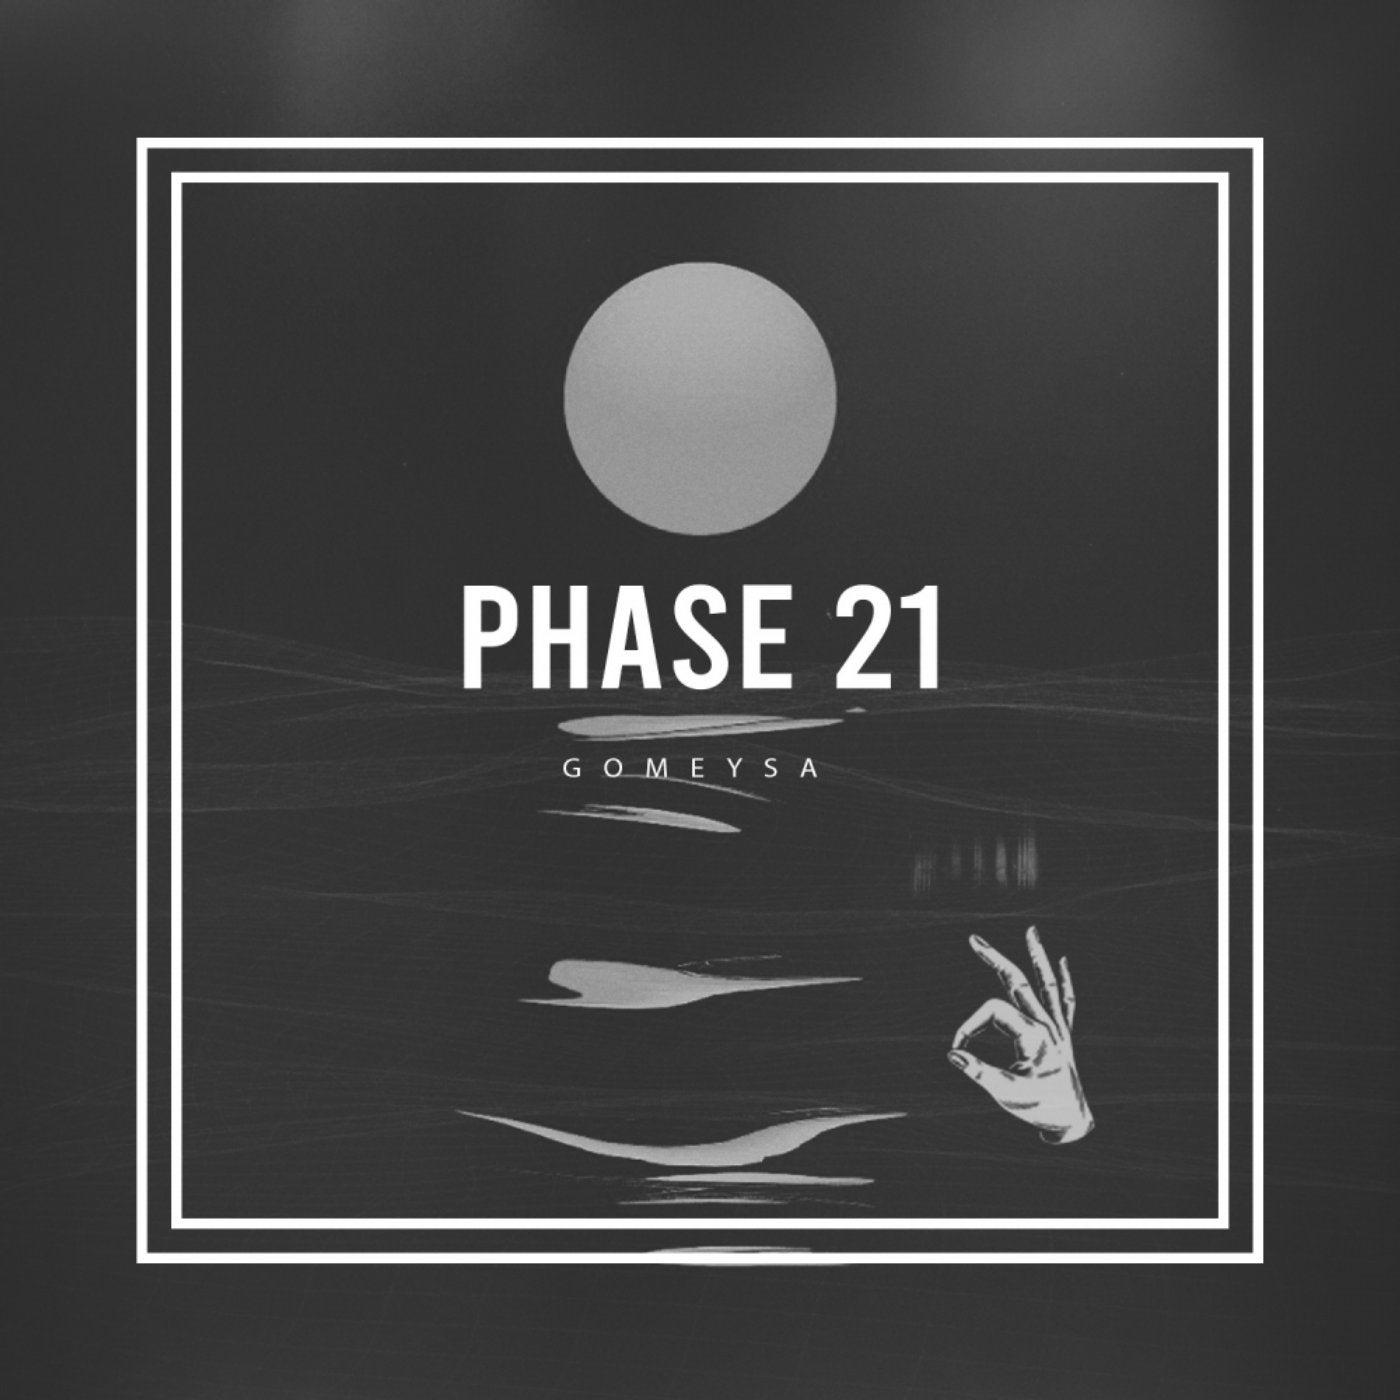 Phase 21